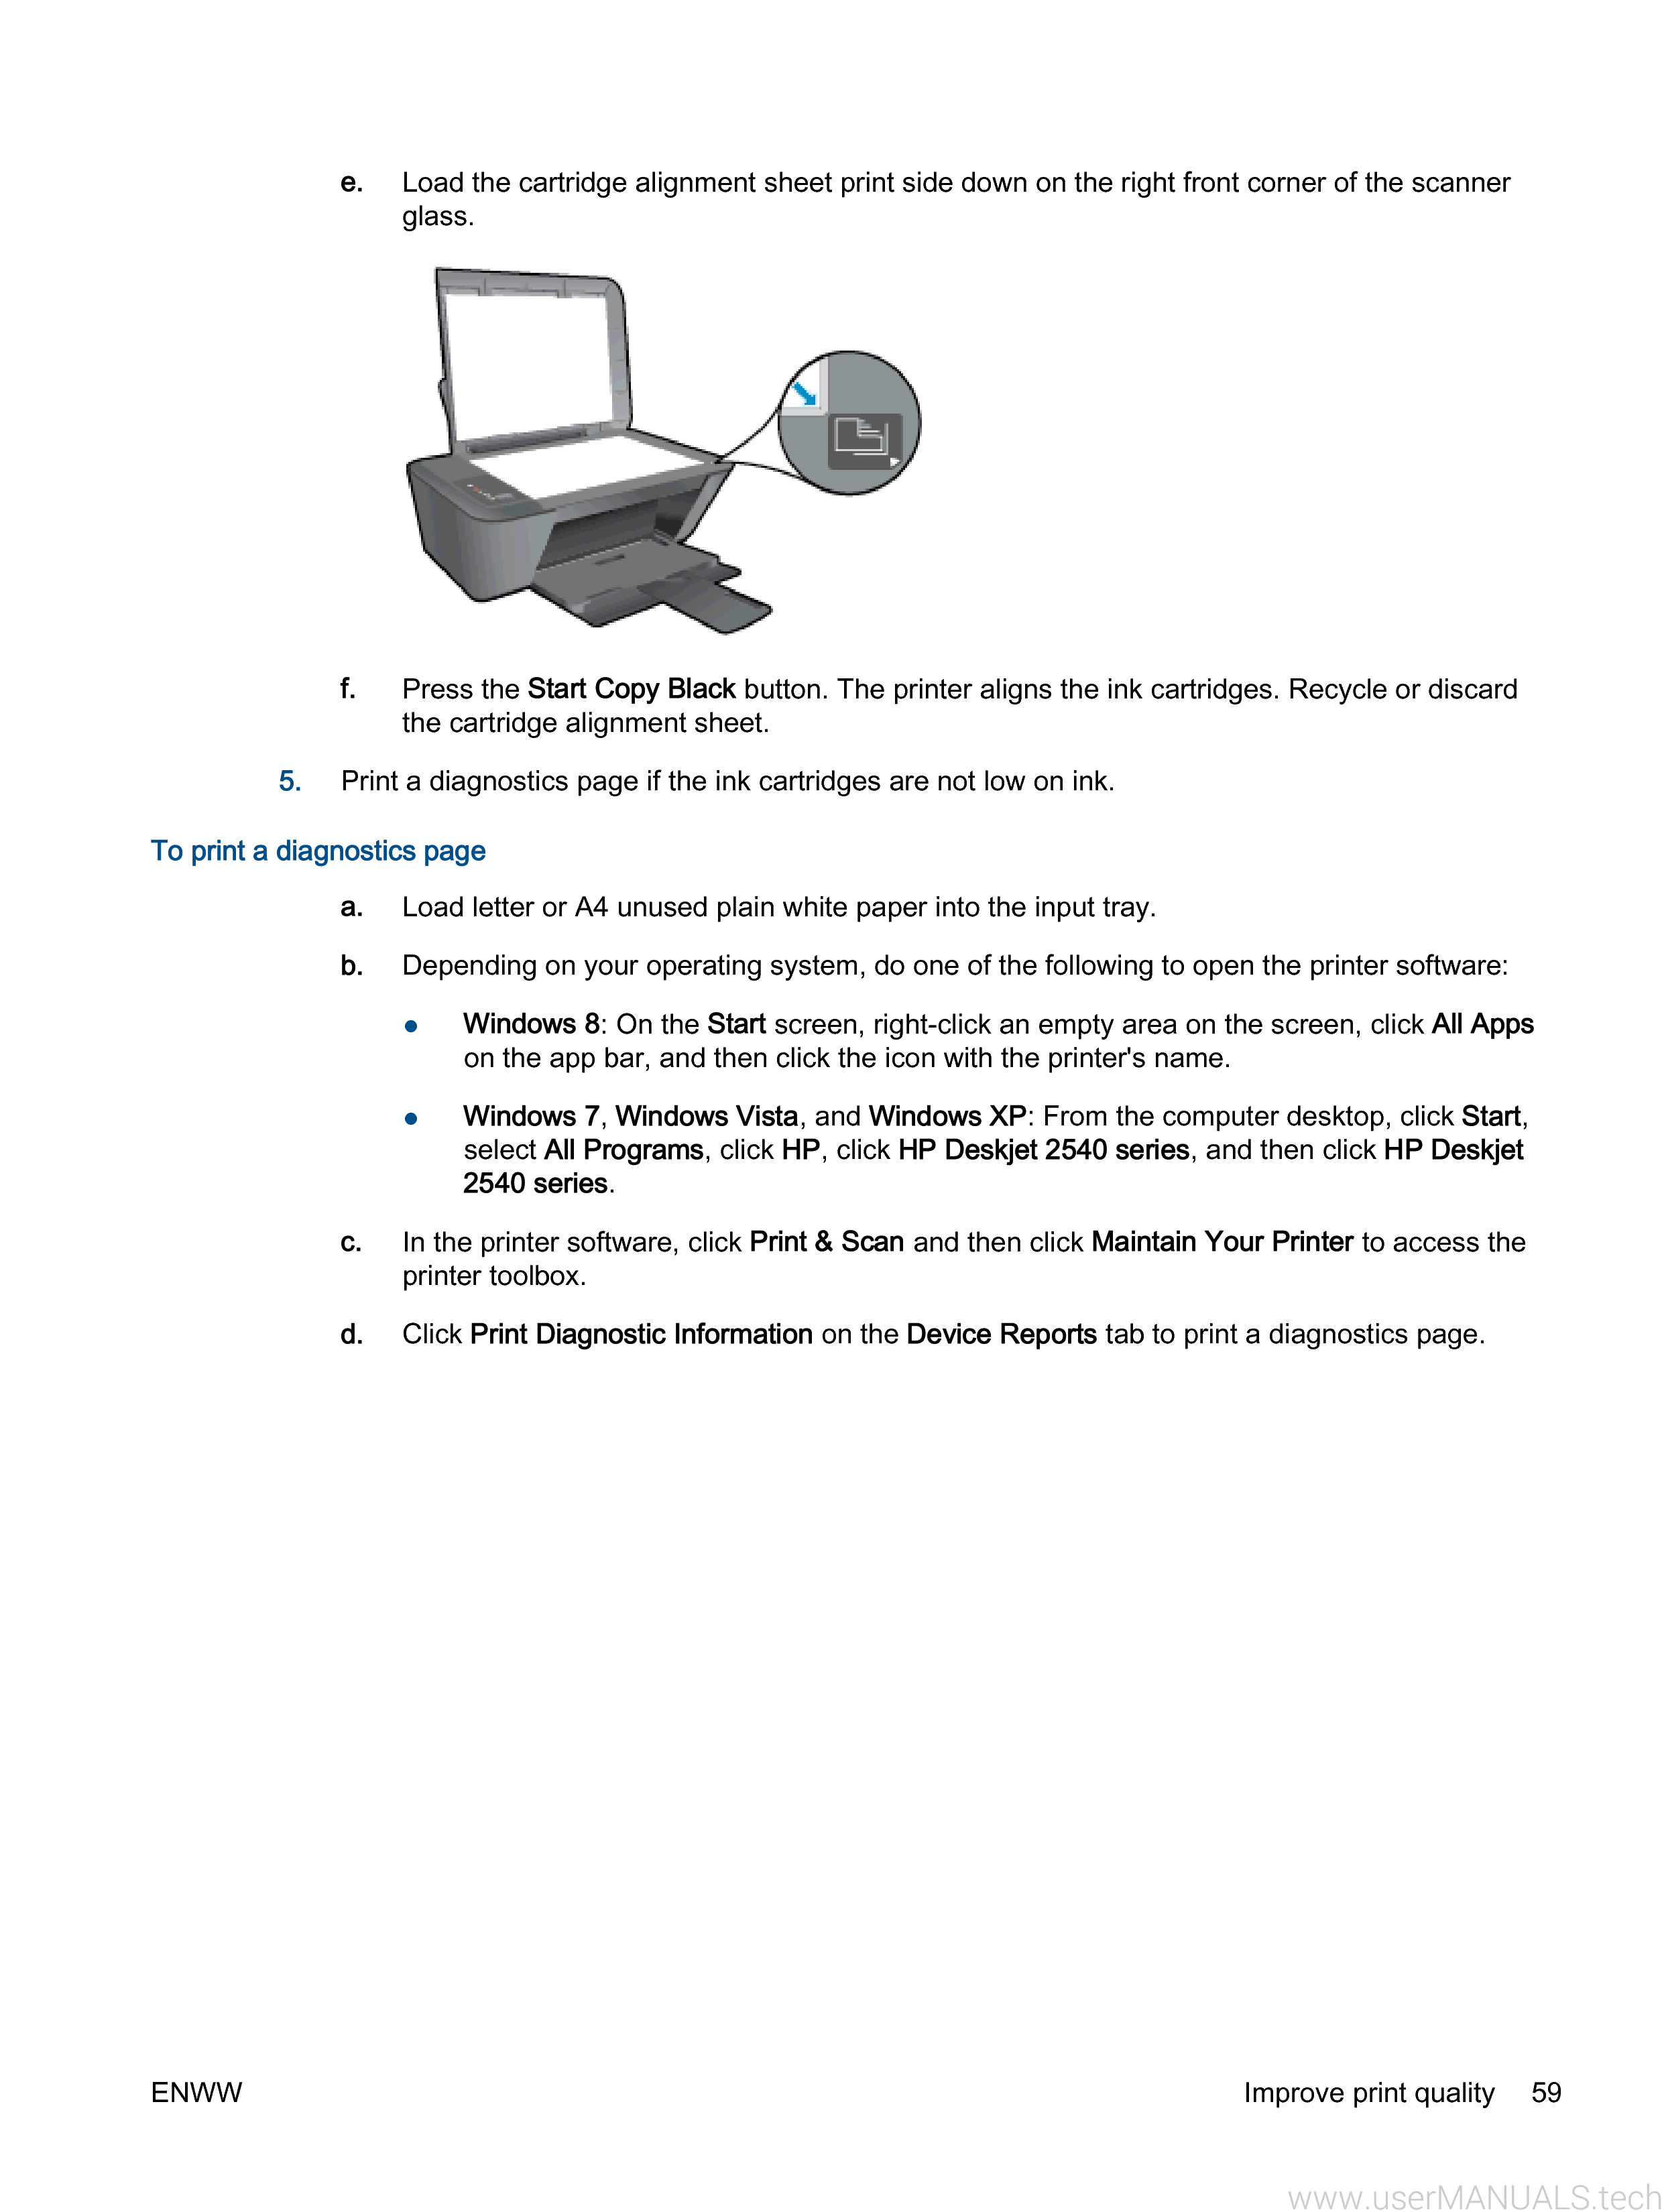 hp 2540 printer manual